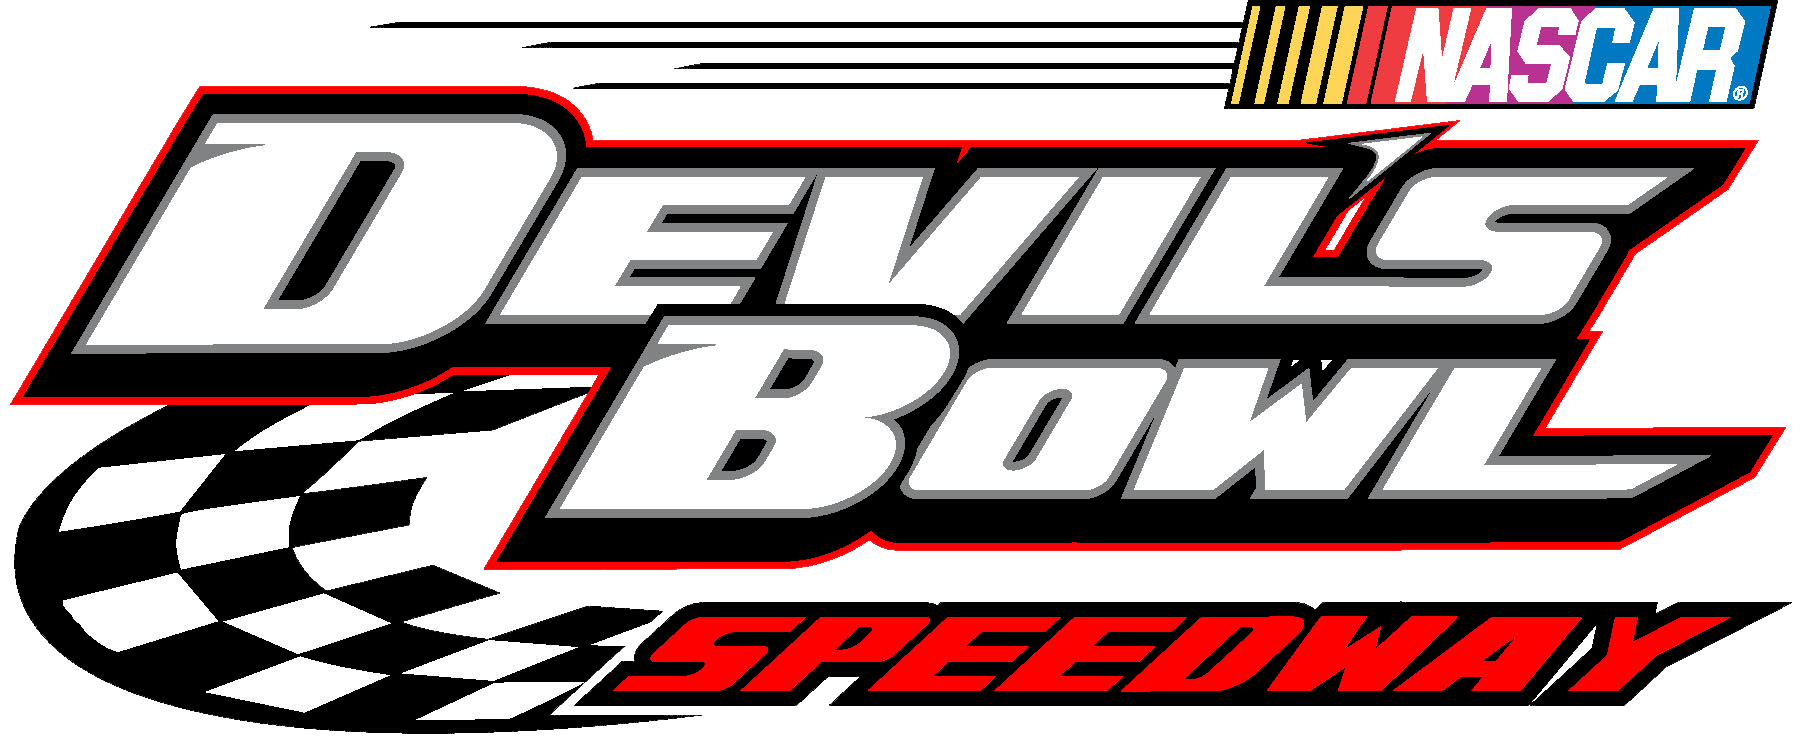 Devils bown speedway logo